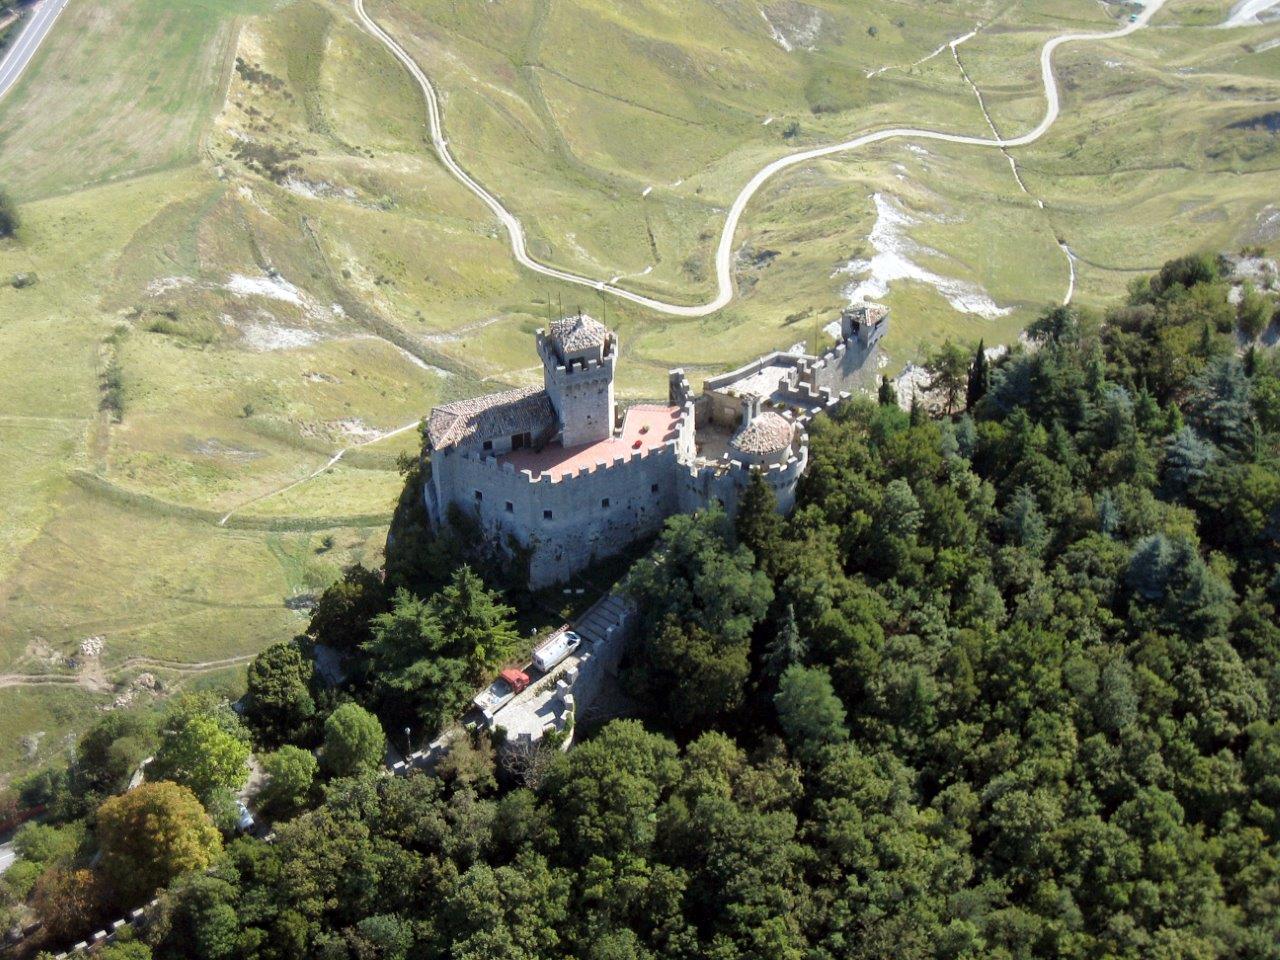 Restaurata la Seconda Torre “Cesta” di San Marino. Ora è di nuovo disponibile per i cittadini e turisti